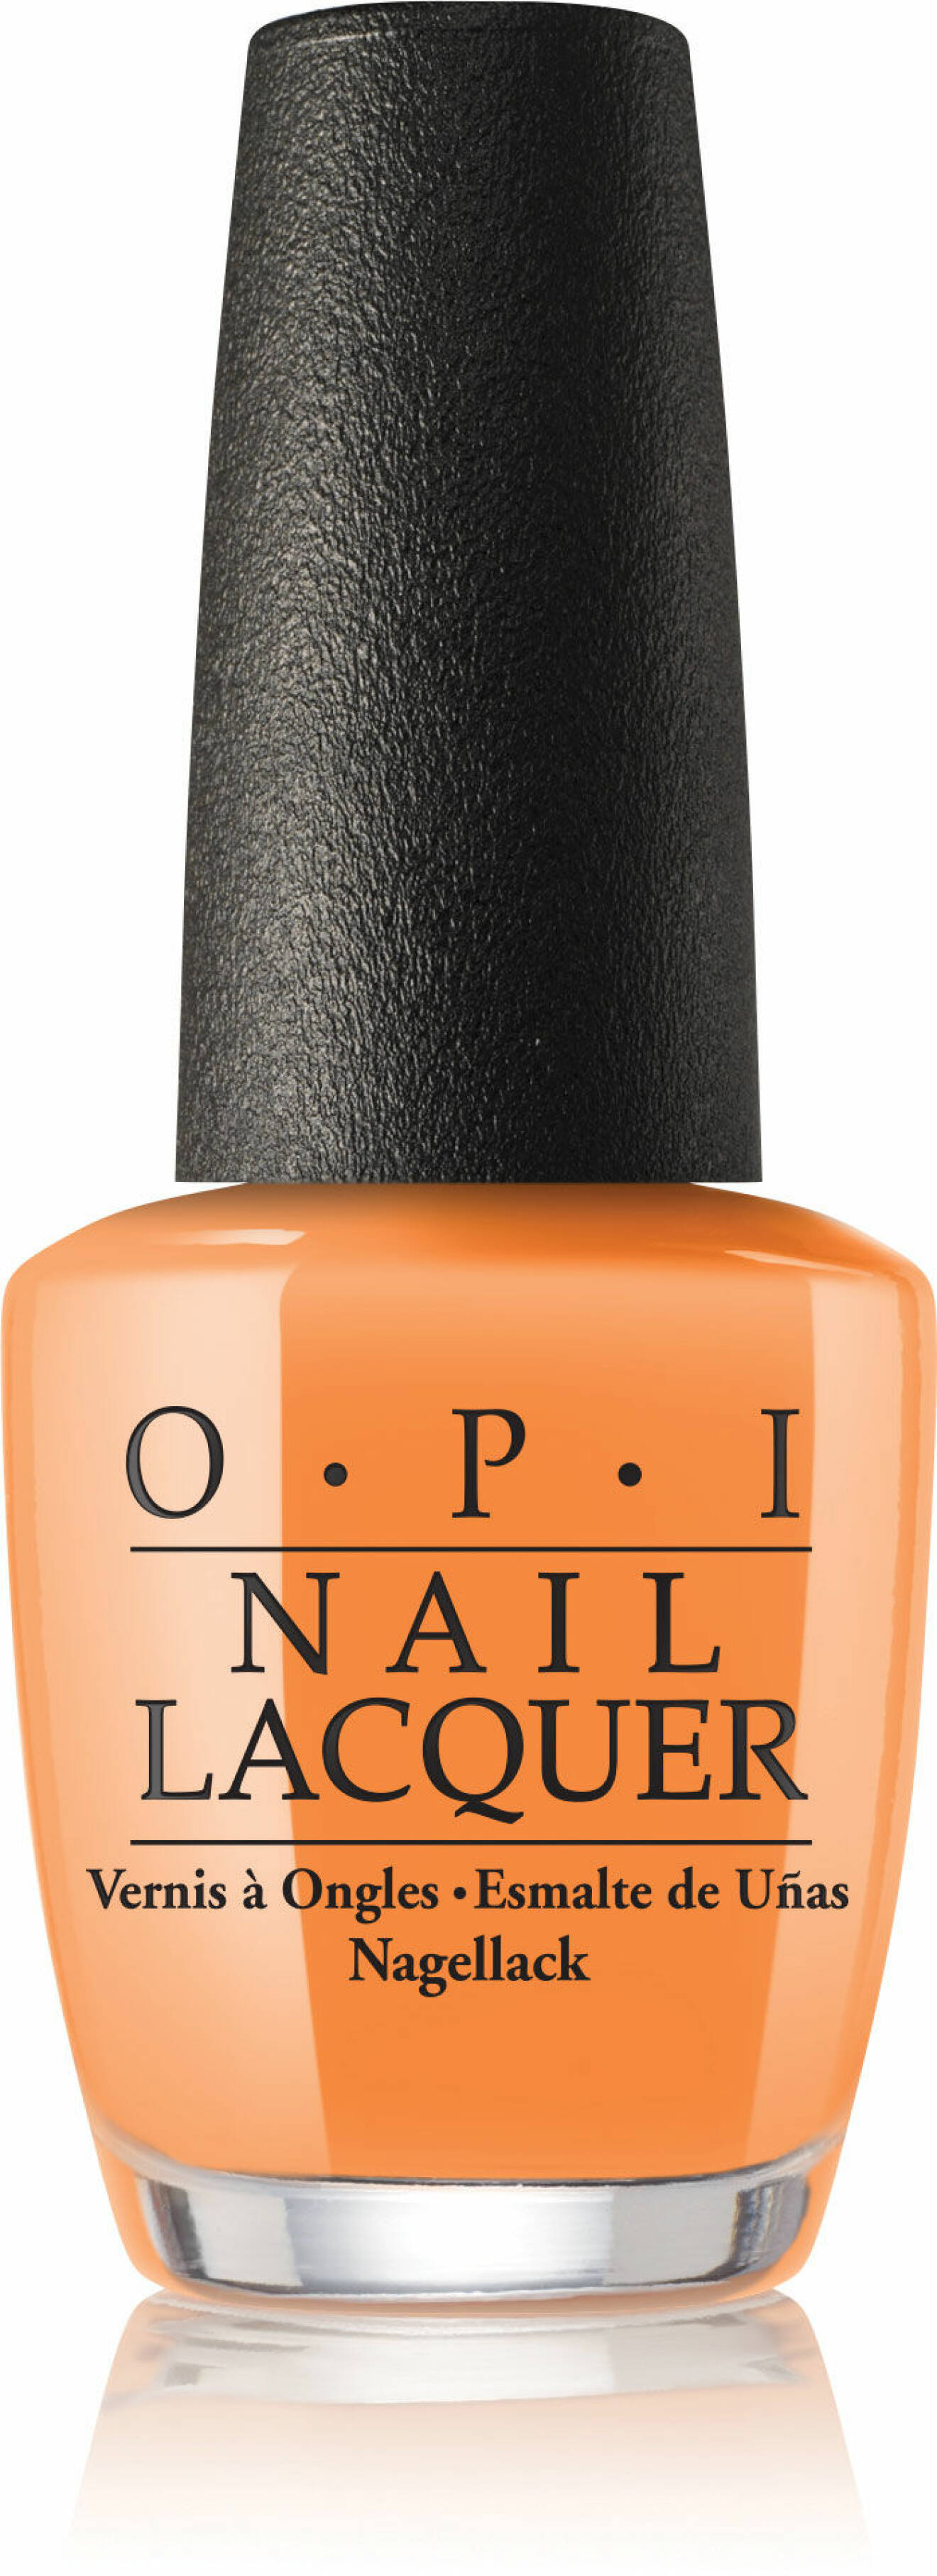 OPI nagellack, orange.